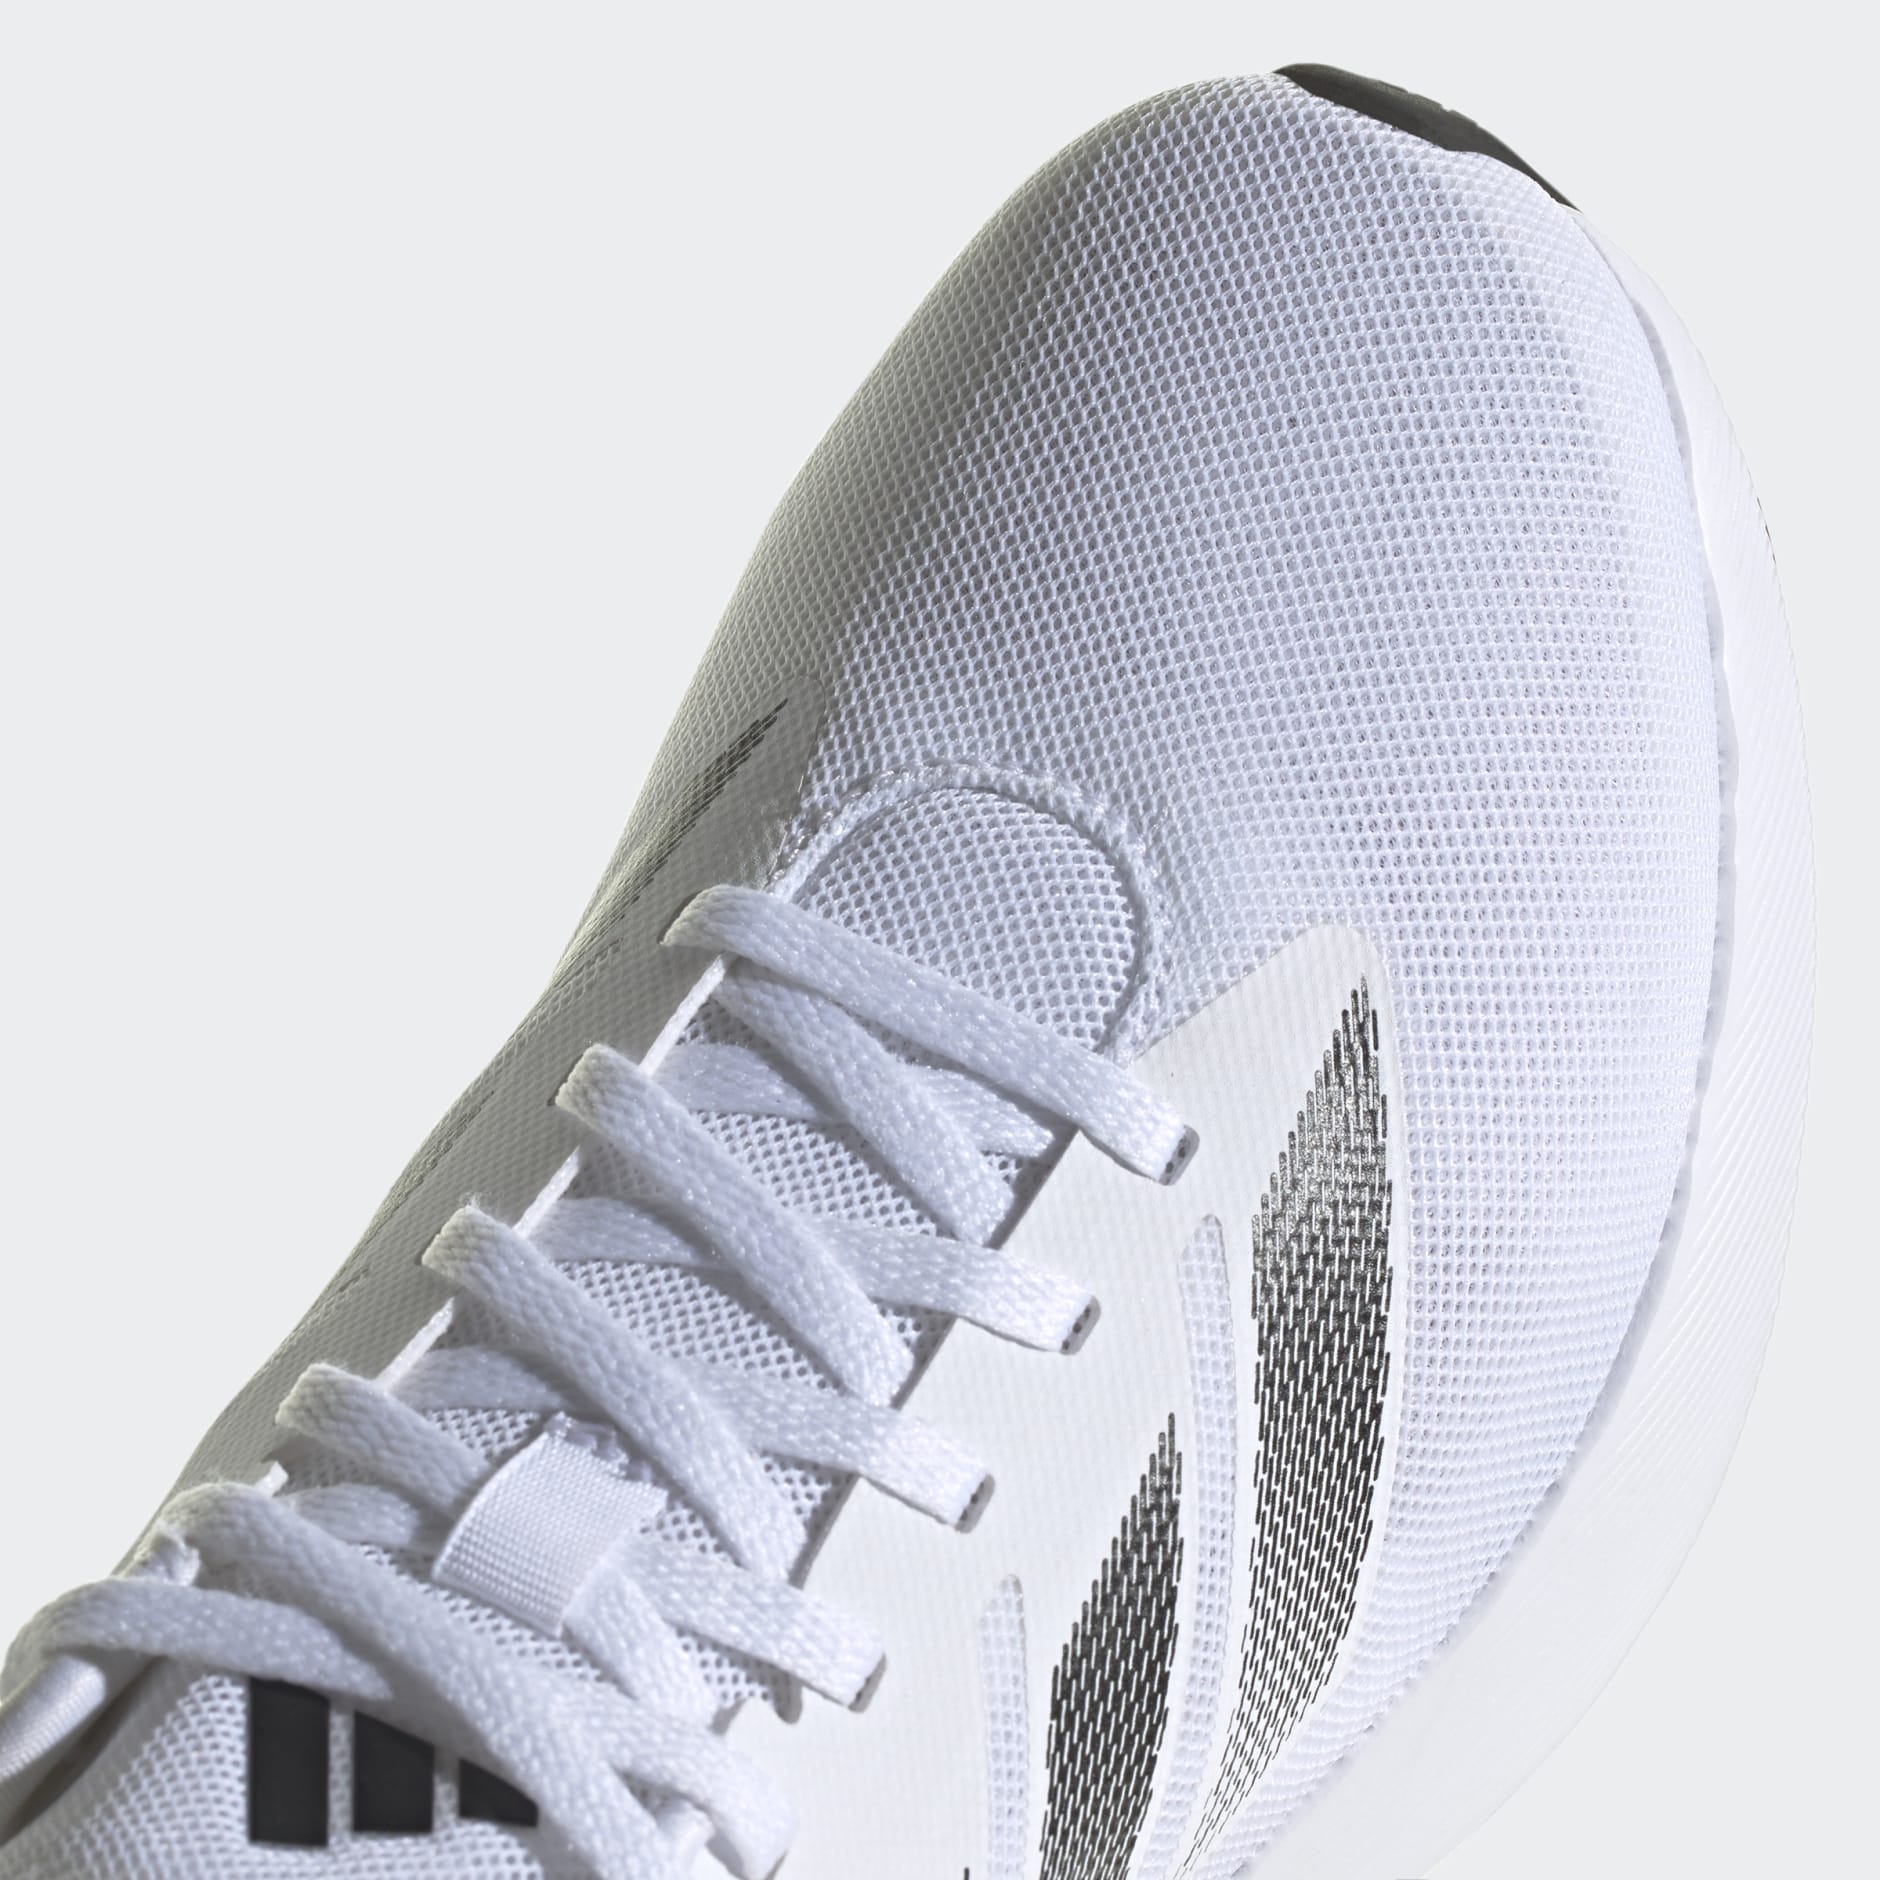 adidas Duramo RC Shoes - White | adidas LK